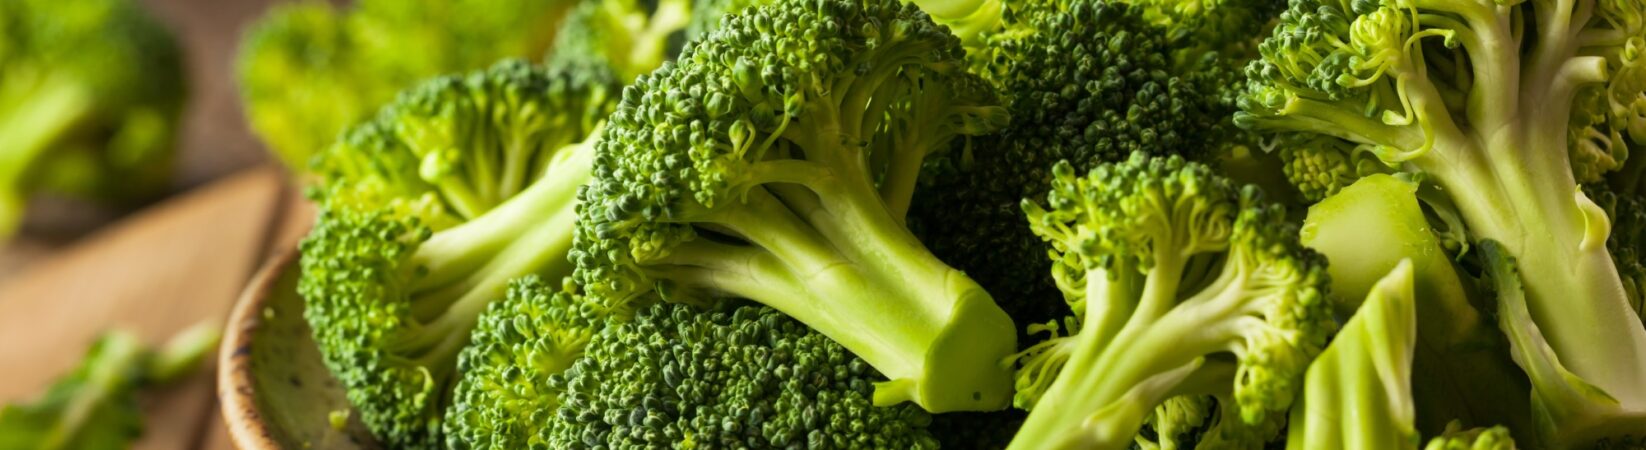 Brokkoli – Hat entzündungs- und krebshemmende Wirkung